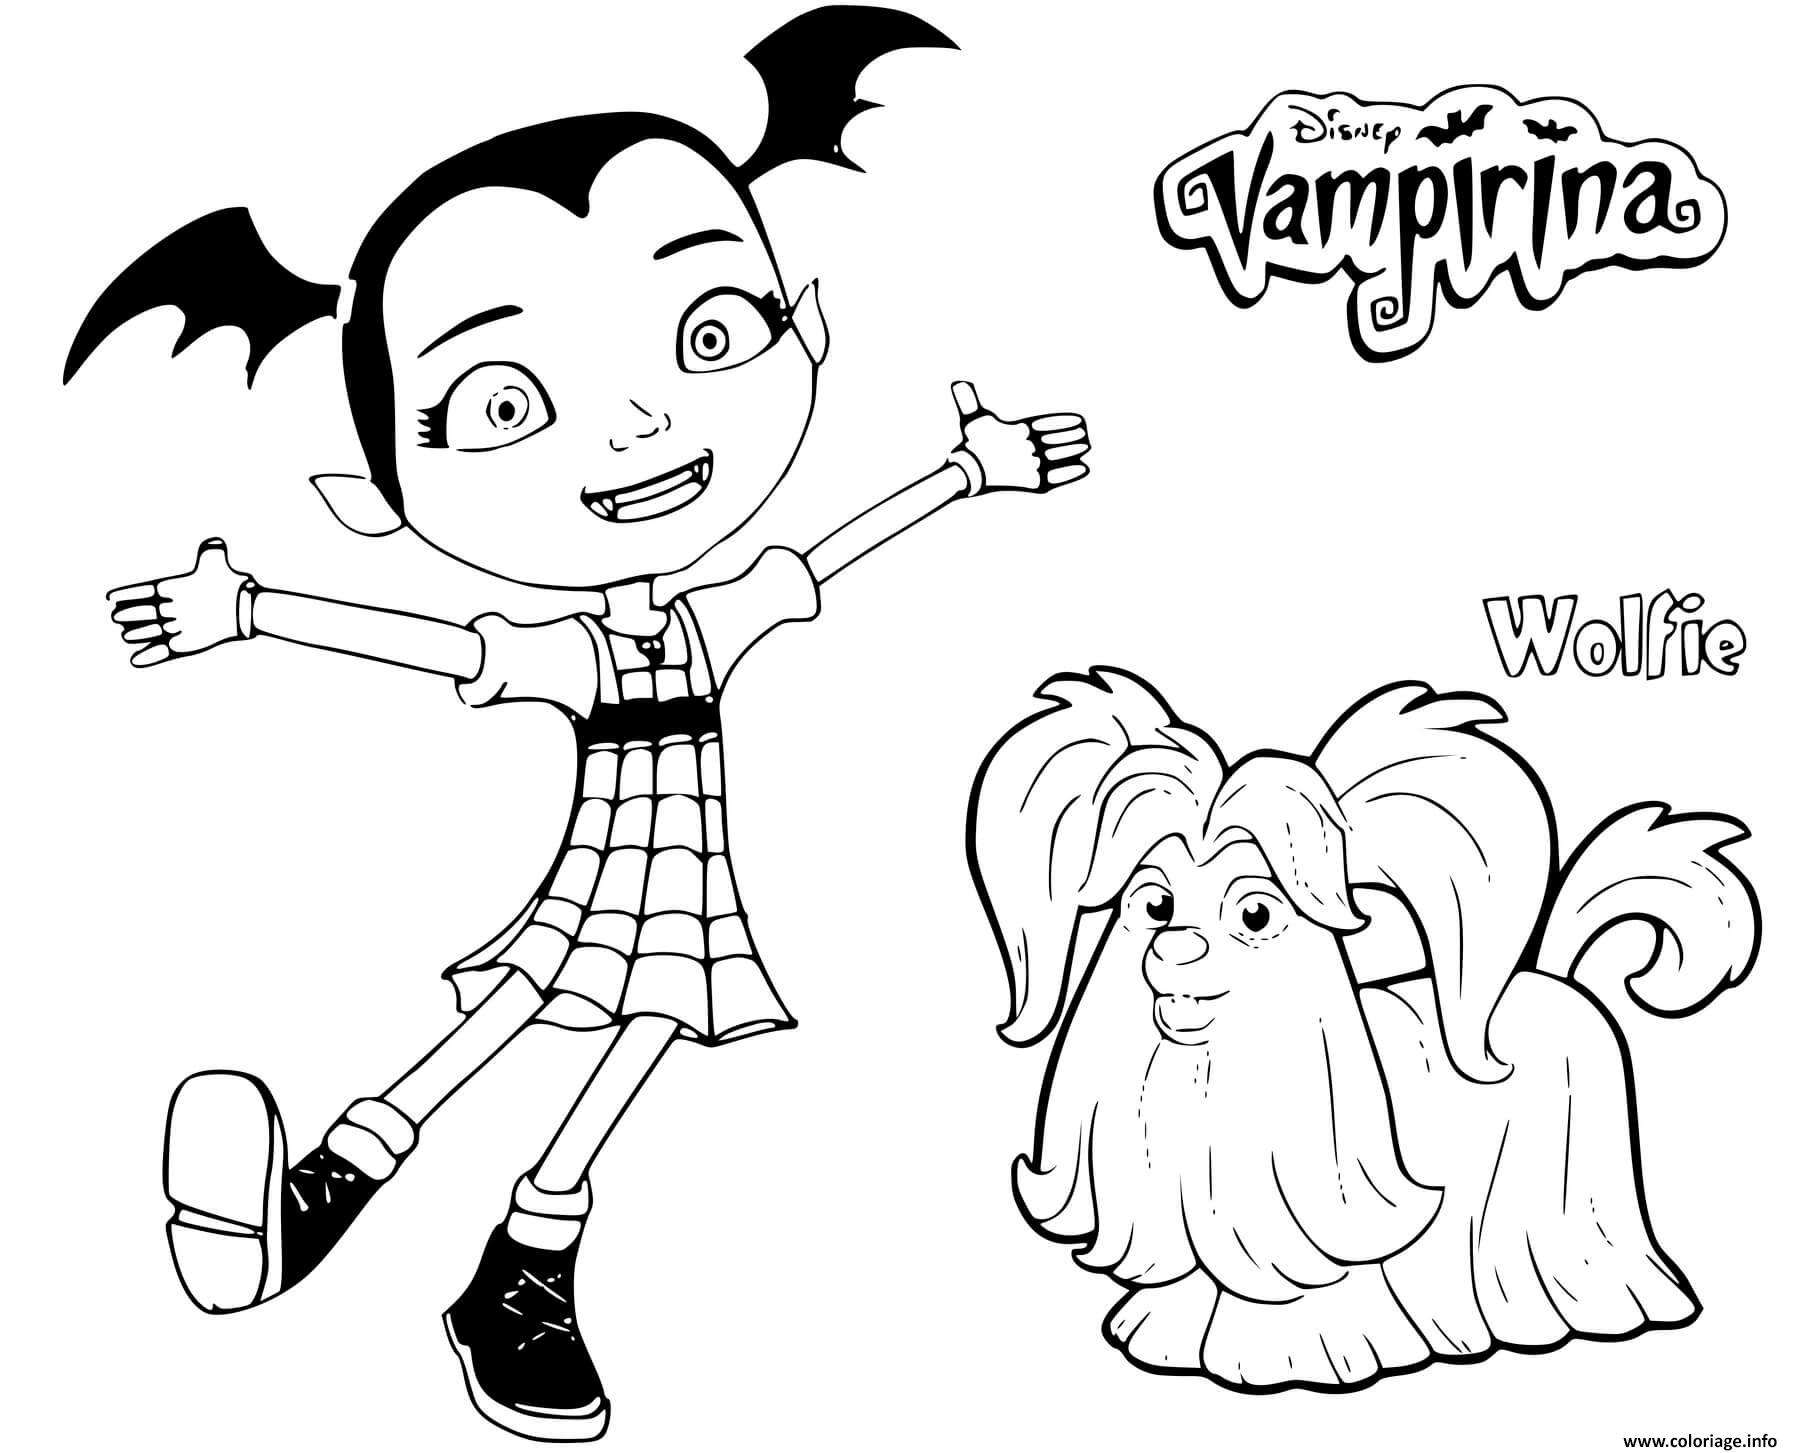 Dessin vampirina avec son chien wolfie Coloriage Gratuit à Imprimer